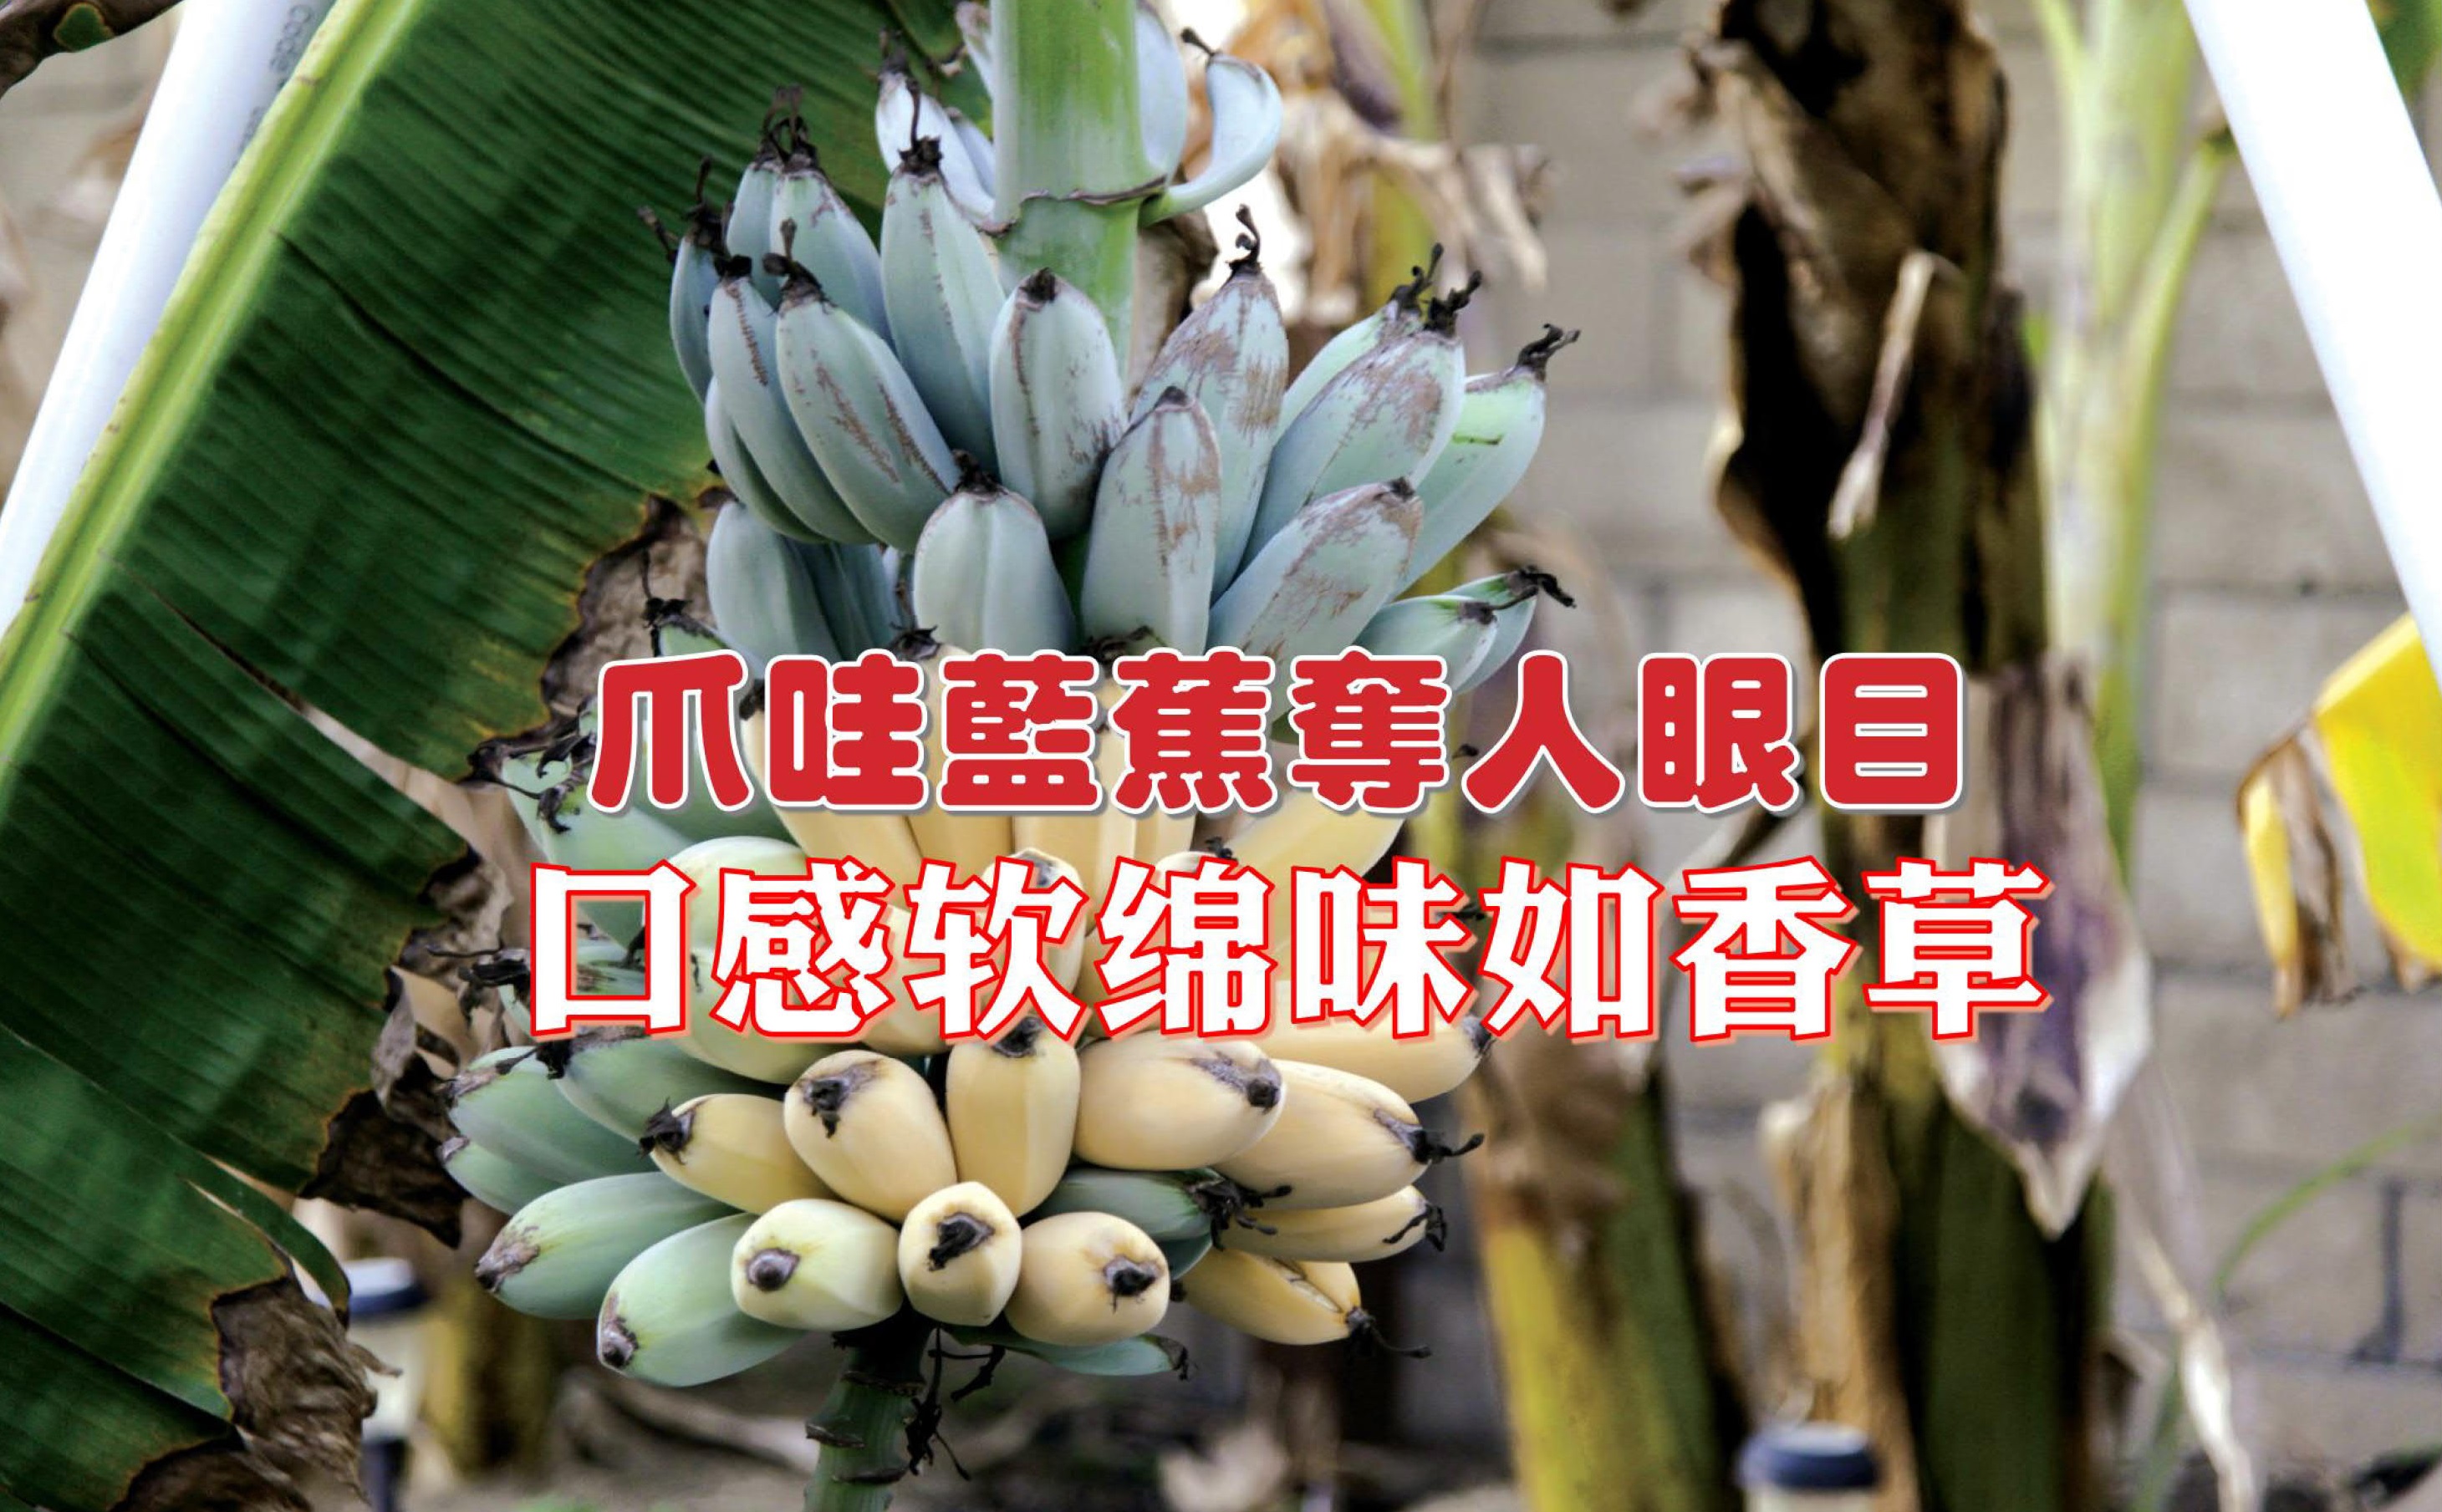 爪哇蓝蕉夺人眼目 口感软绵味如香草 - 农牧世界